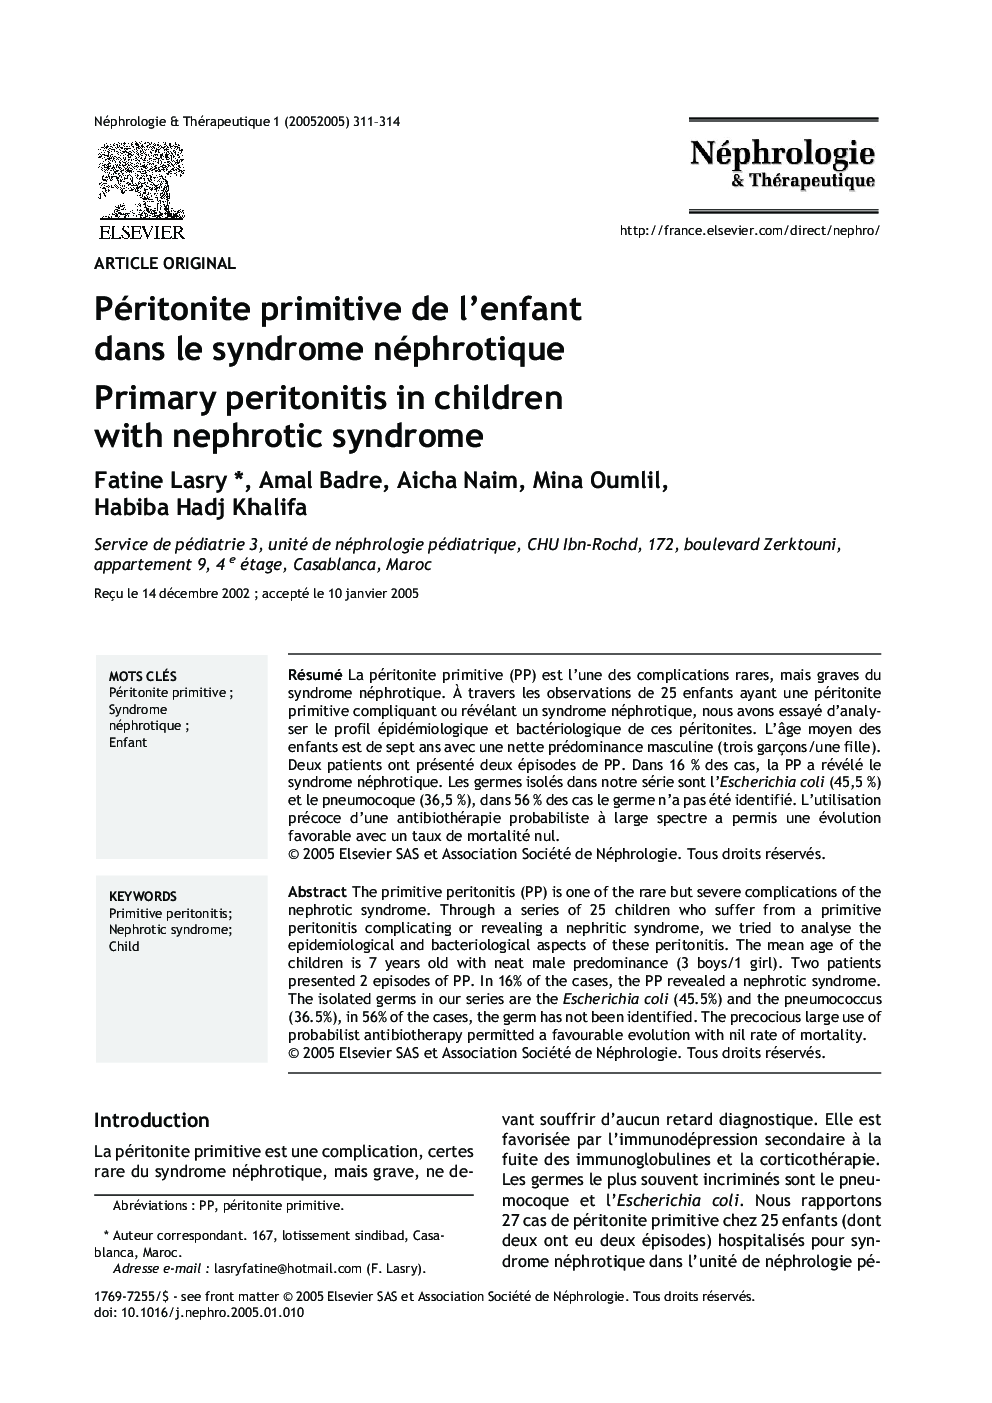 Péritonite primitive de l'enfant dans le syndrome néphrotique